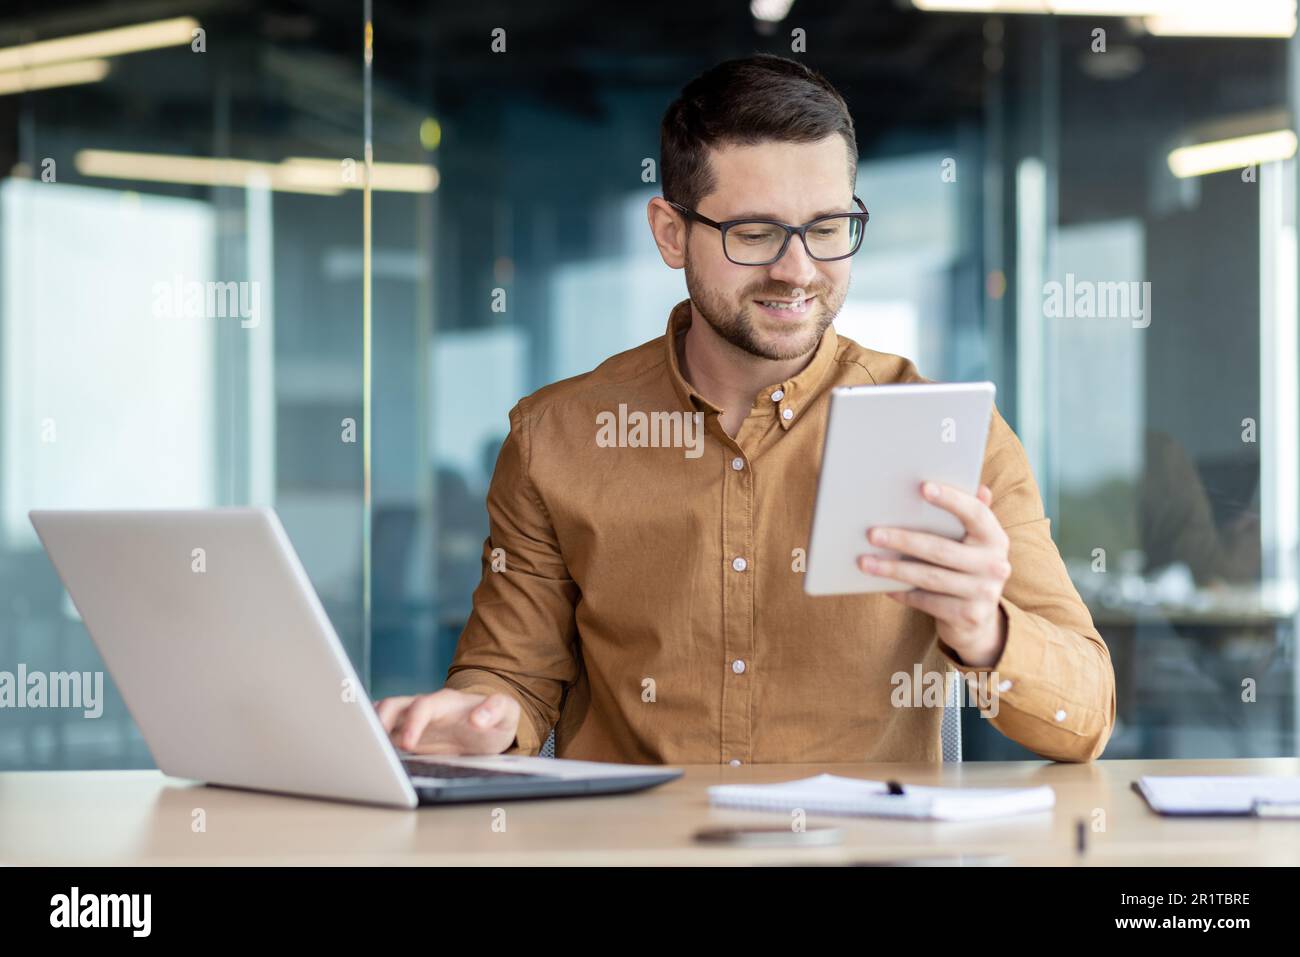 Un jeune homme travaille dans un centre de bureau, s'assoit à une table avec un ordinateur portable, tient une tablette dans la main et parle lors d'un appel vidéo avec le sourire. Banque D'Images